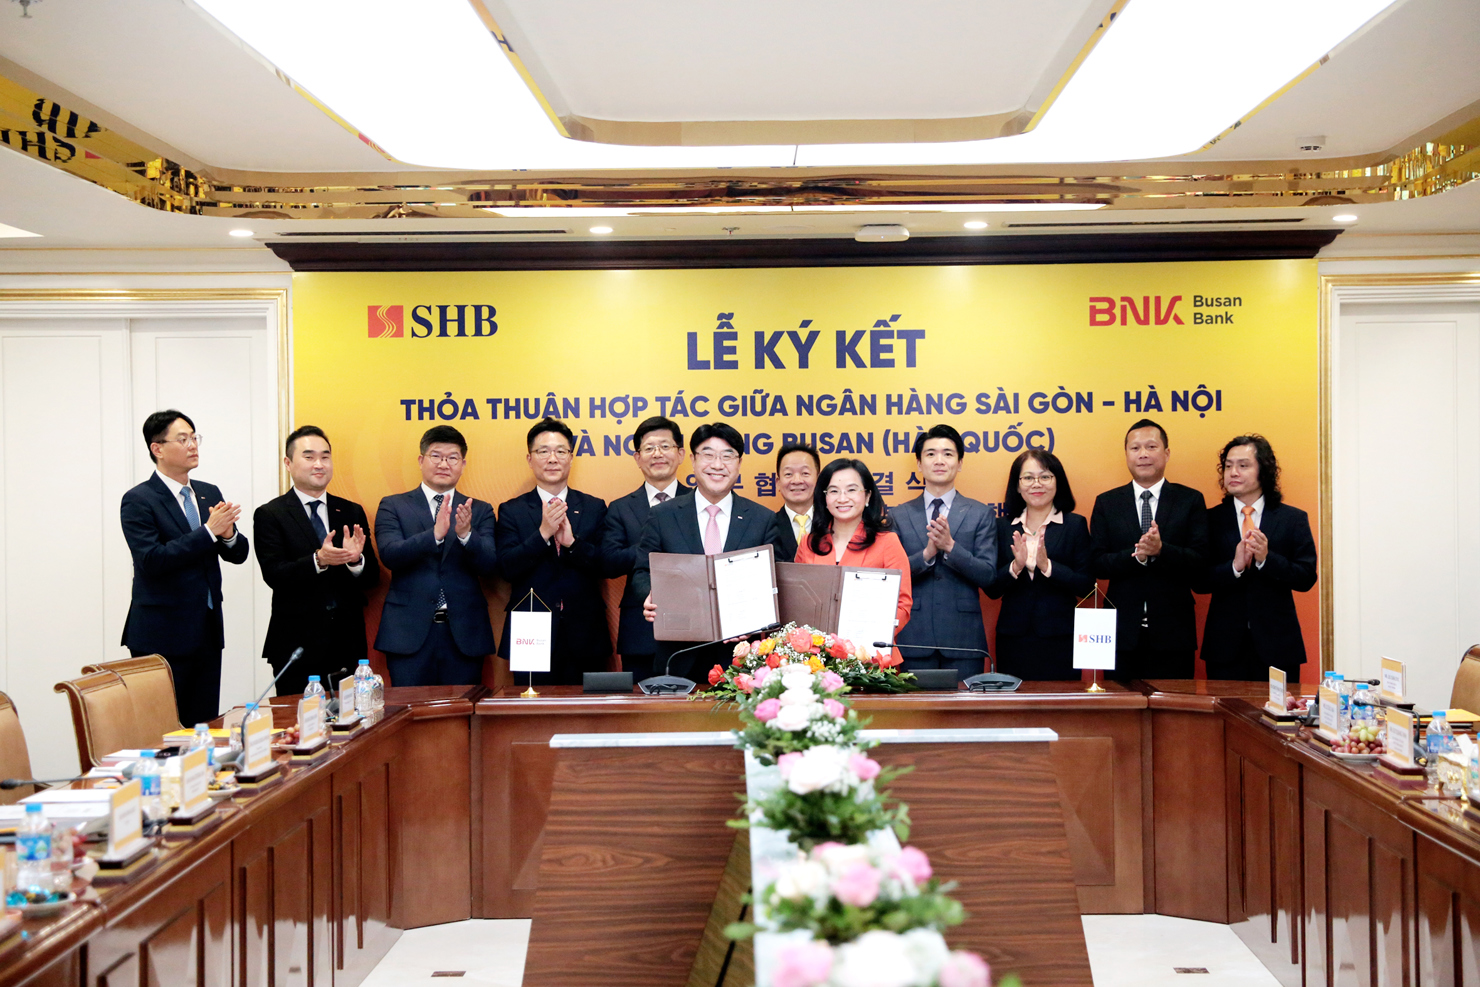 Ông Bang Seong-bin - Chủ tịch Hội đồng quản trị, Tổng Giám đốc Ngân hàng Busan và bà Ngô Thu Hà - Tổng Giám đốc SHB trao đổi thỏa thuận hợp tác.